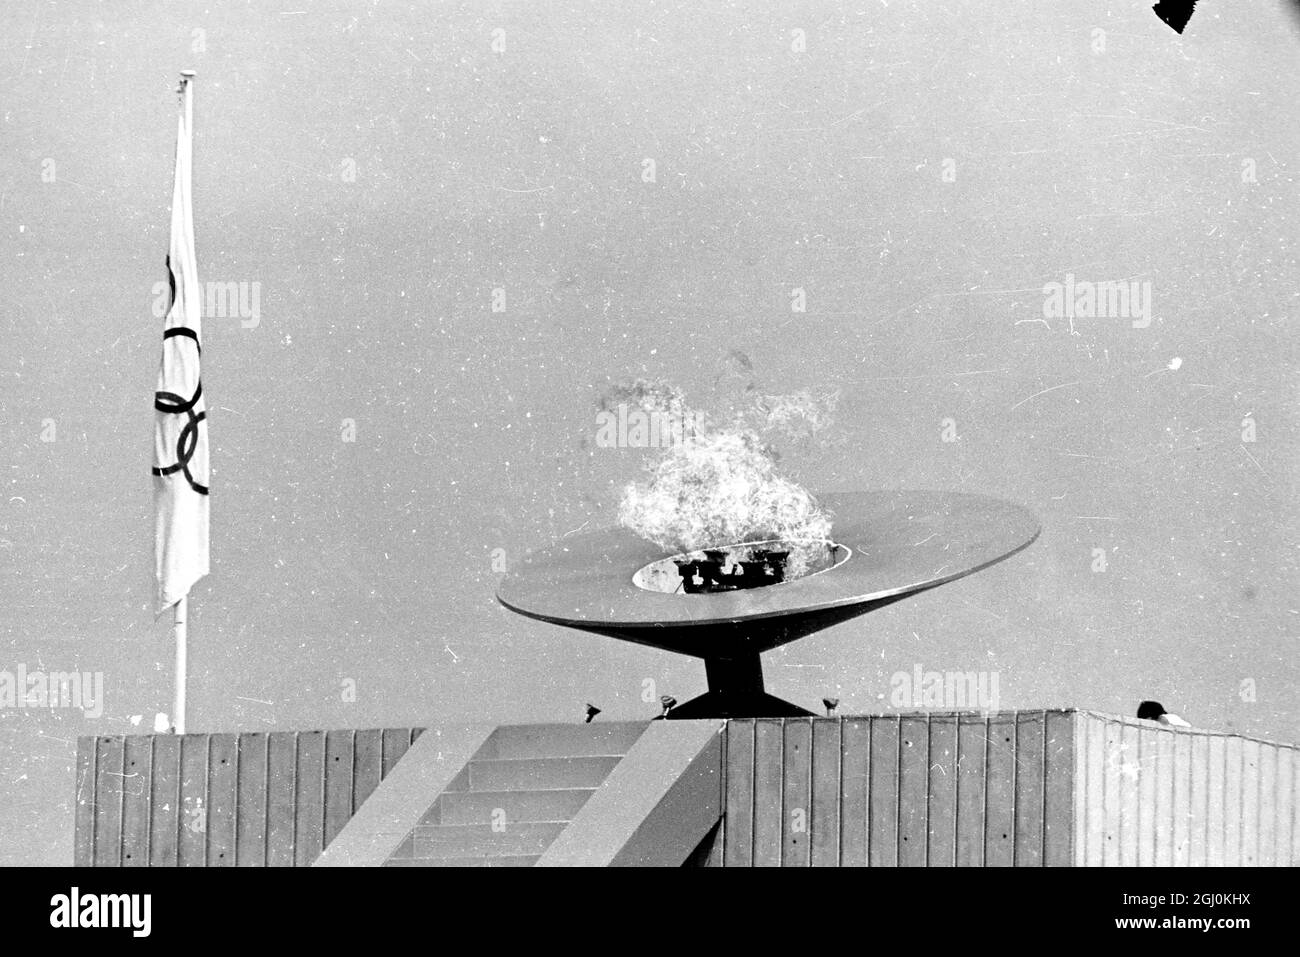 Mexiko-Stadt: Hoch über dem Olympiastadion brennt bei der Eröffnungsfeier der Olympischen Spiele 1968 die olympische Flamme. Die Flamme wurde von Enriqueta Basilio de Sotelo, dem mexikanischen Hürdenläufer, angezündet. Sie ist die erste Frau in der Geschichte der Olympischen Spiele der Moderne, die die Ehre hat. Die Zeremonie signalisierte den Beginn der Spiele am 12. Oktober 1968 Stockfoto